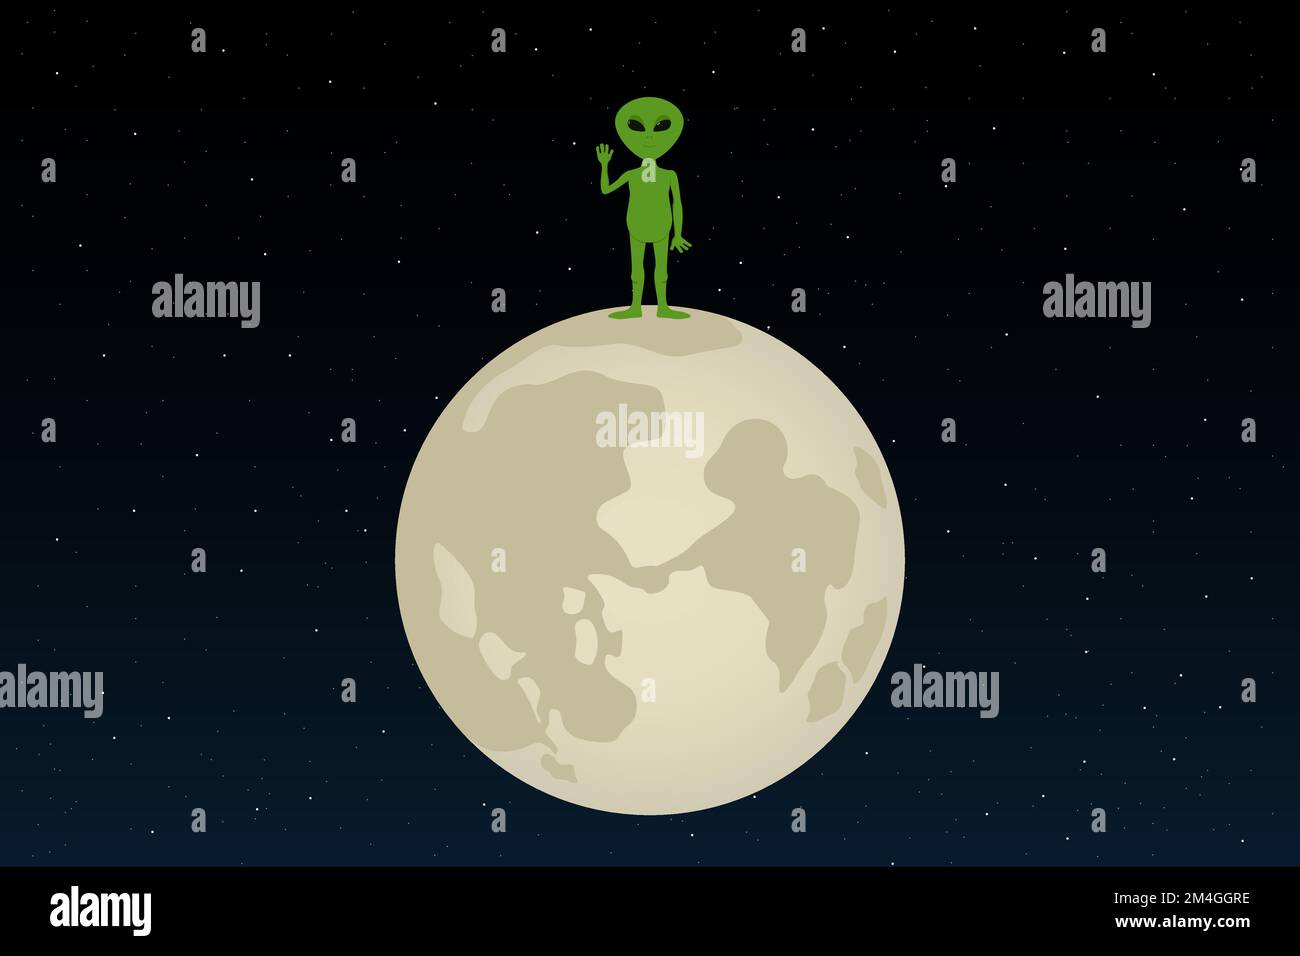 Statif vert extraterrestre sur la lune avec main levée. Style de dessin animé. Illustration vectorielle. Illustration de Vecteur